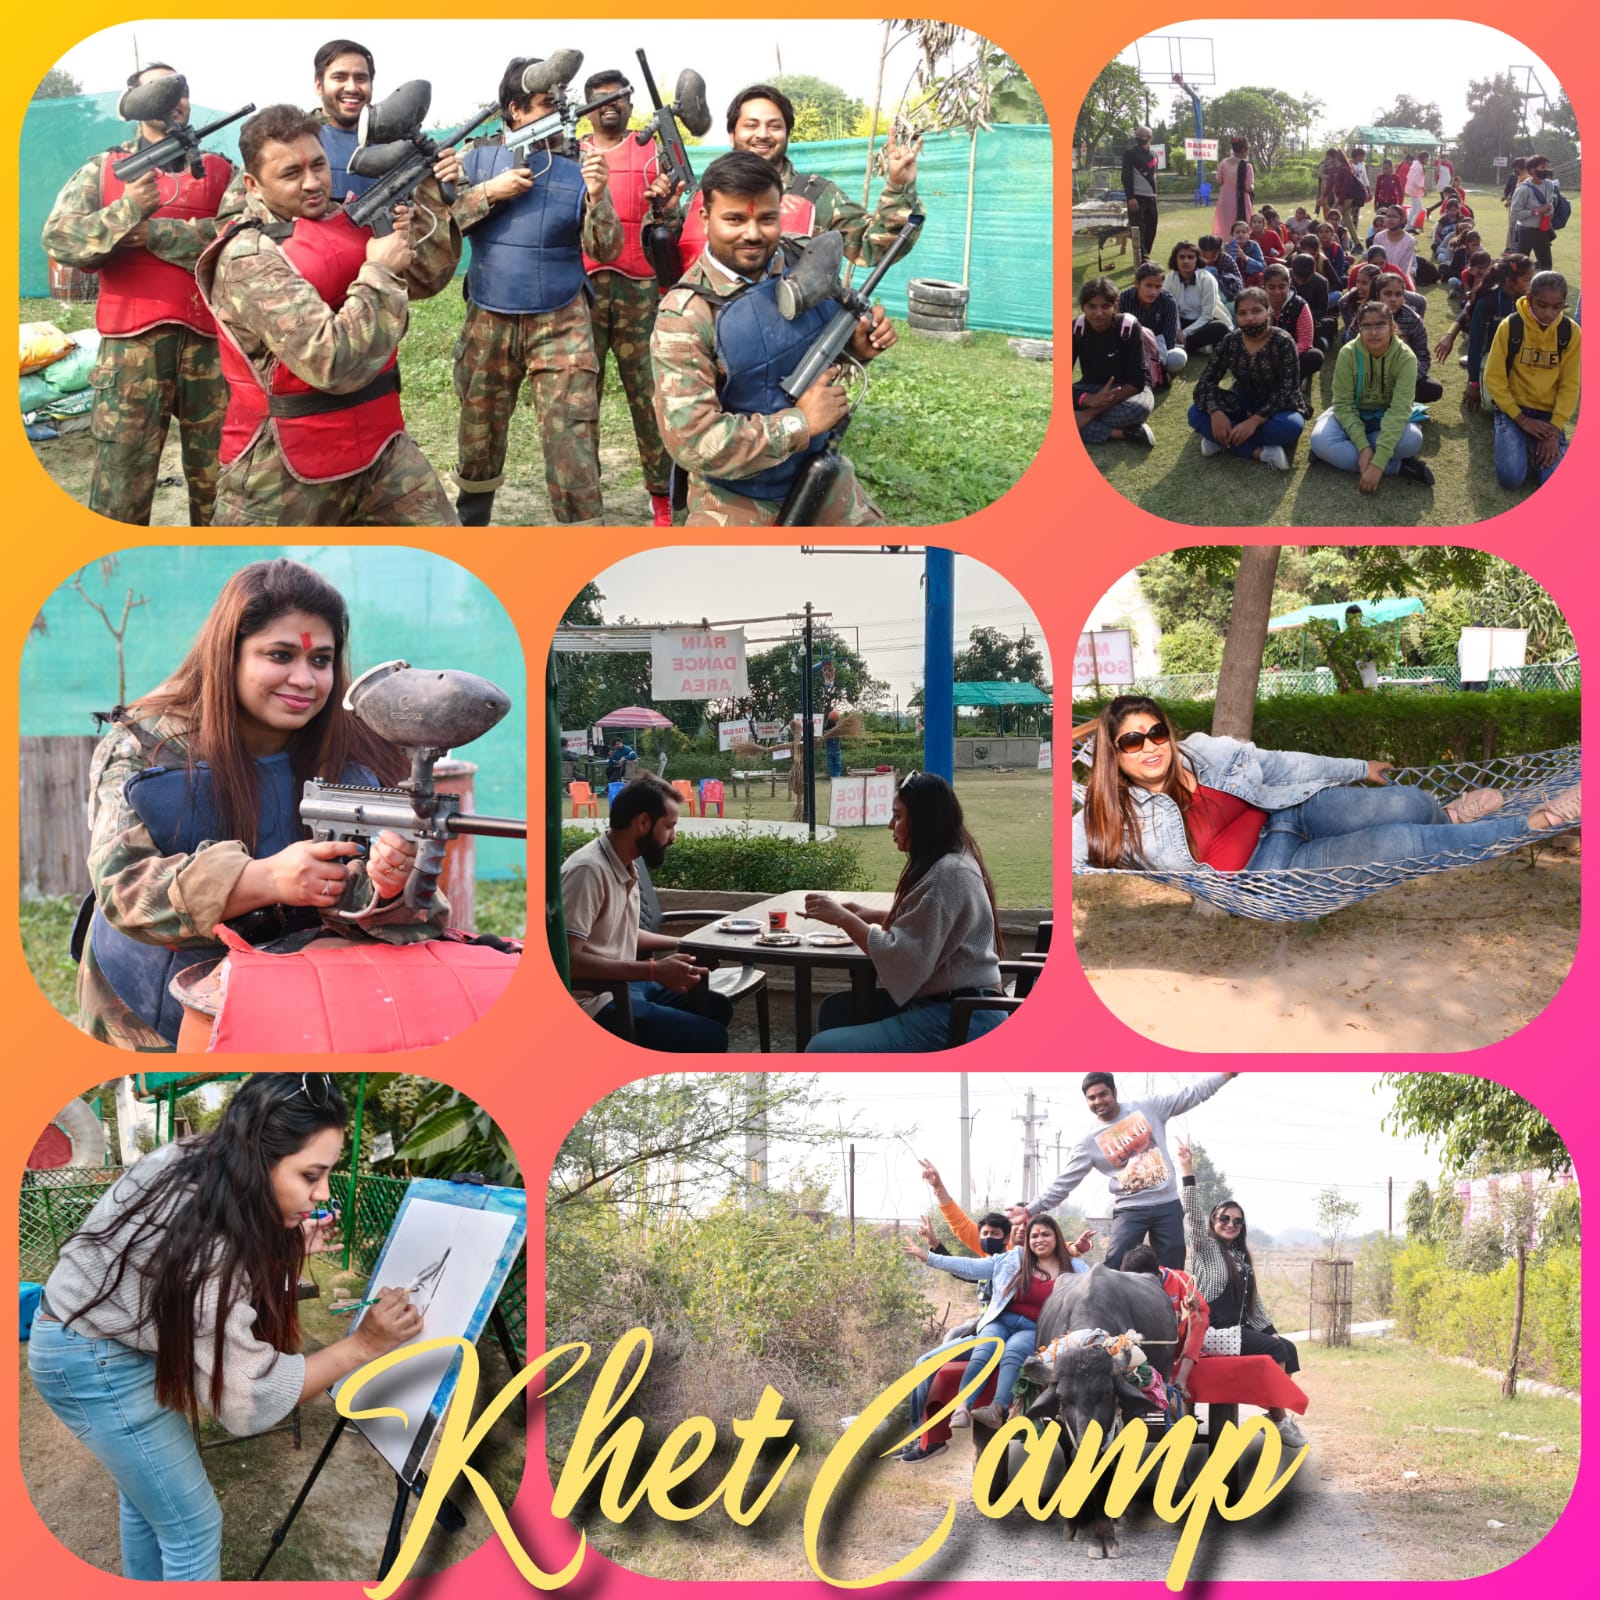 Khet Camp Entertainment | Adventure Park